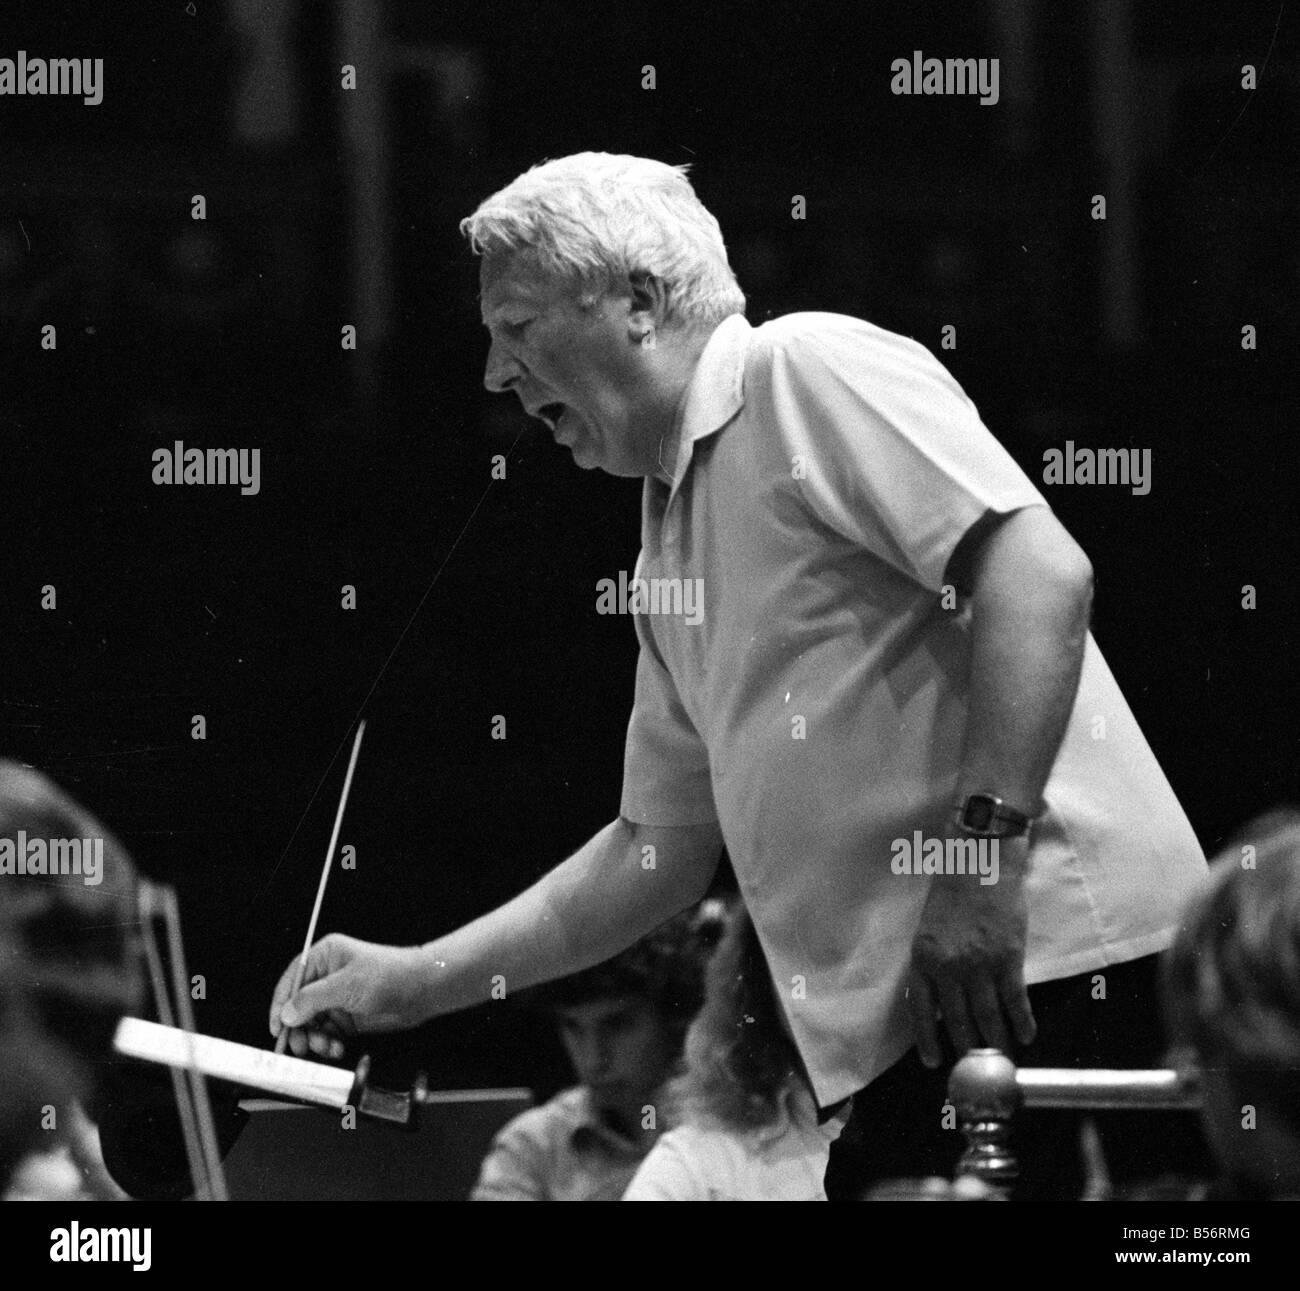 107 Edward Heath à répéter avec l'Orchestre des jeunes de la Communauté européenne forte au Royal Albert Hall. M. Heath est président de l'orchestre.;Août 1978;78-3974-003 Banque D'Images